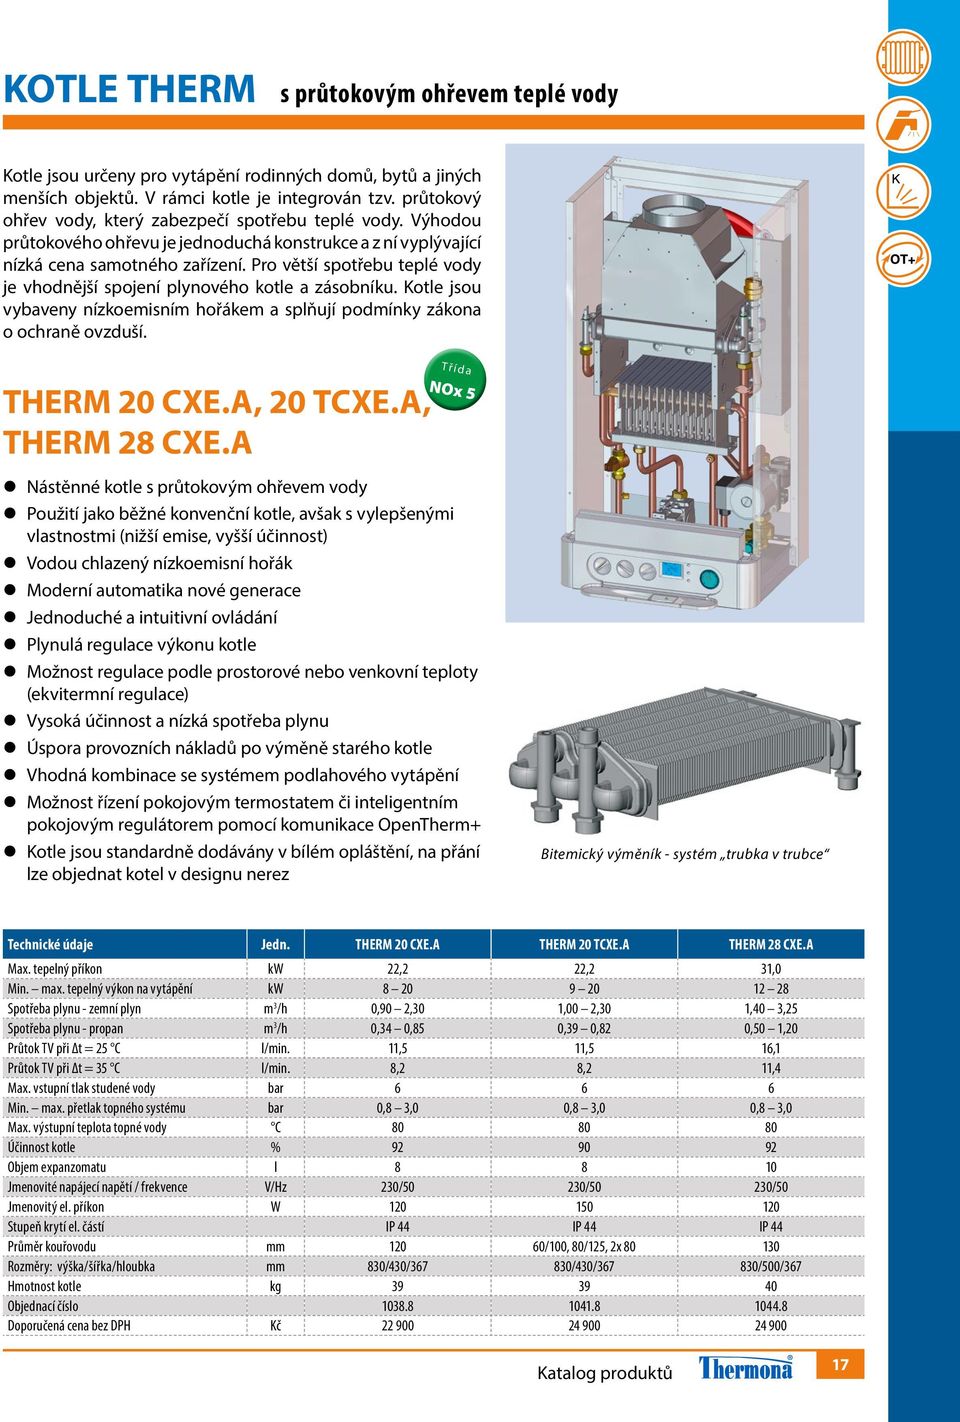 Pro větší spotřebu teplé vody je vhodnější spojení plynového kotle a zásobníku. Kotle jsou vybaveny nízkoemisním hořákem a splňují podmínky zákona o ochraně ovzduší. THERM 20 CXE.A, 20 TCXE.